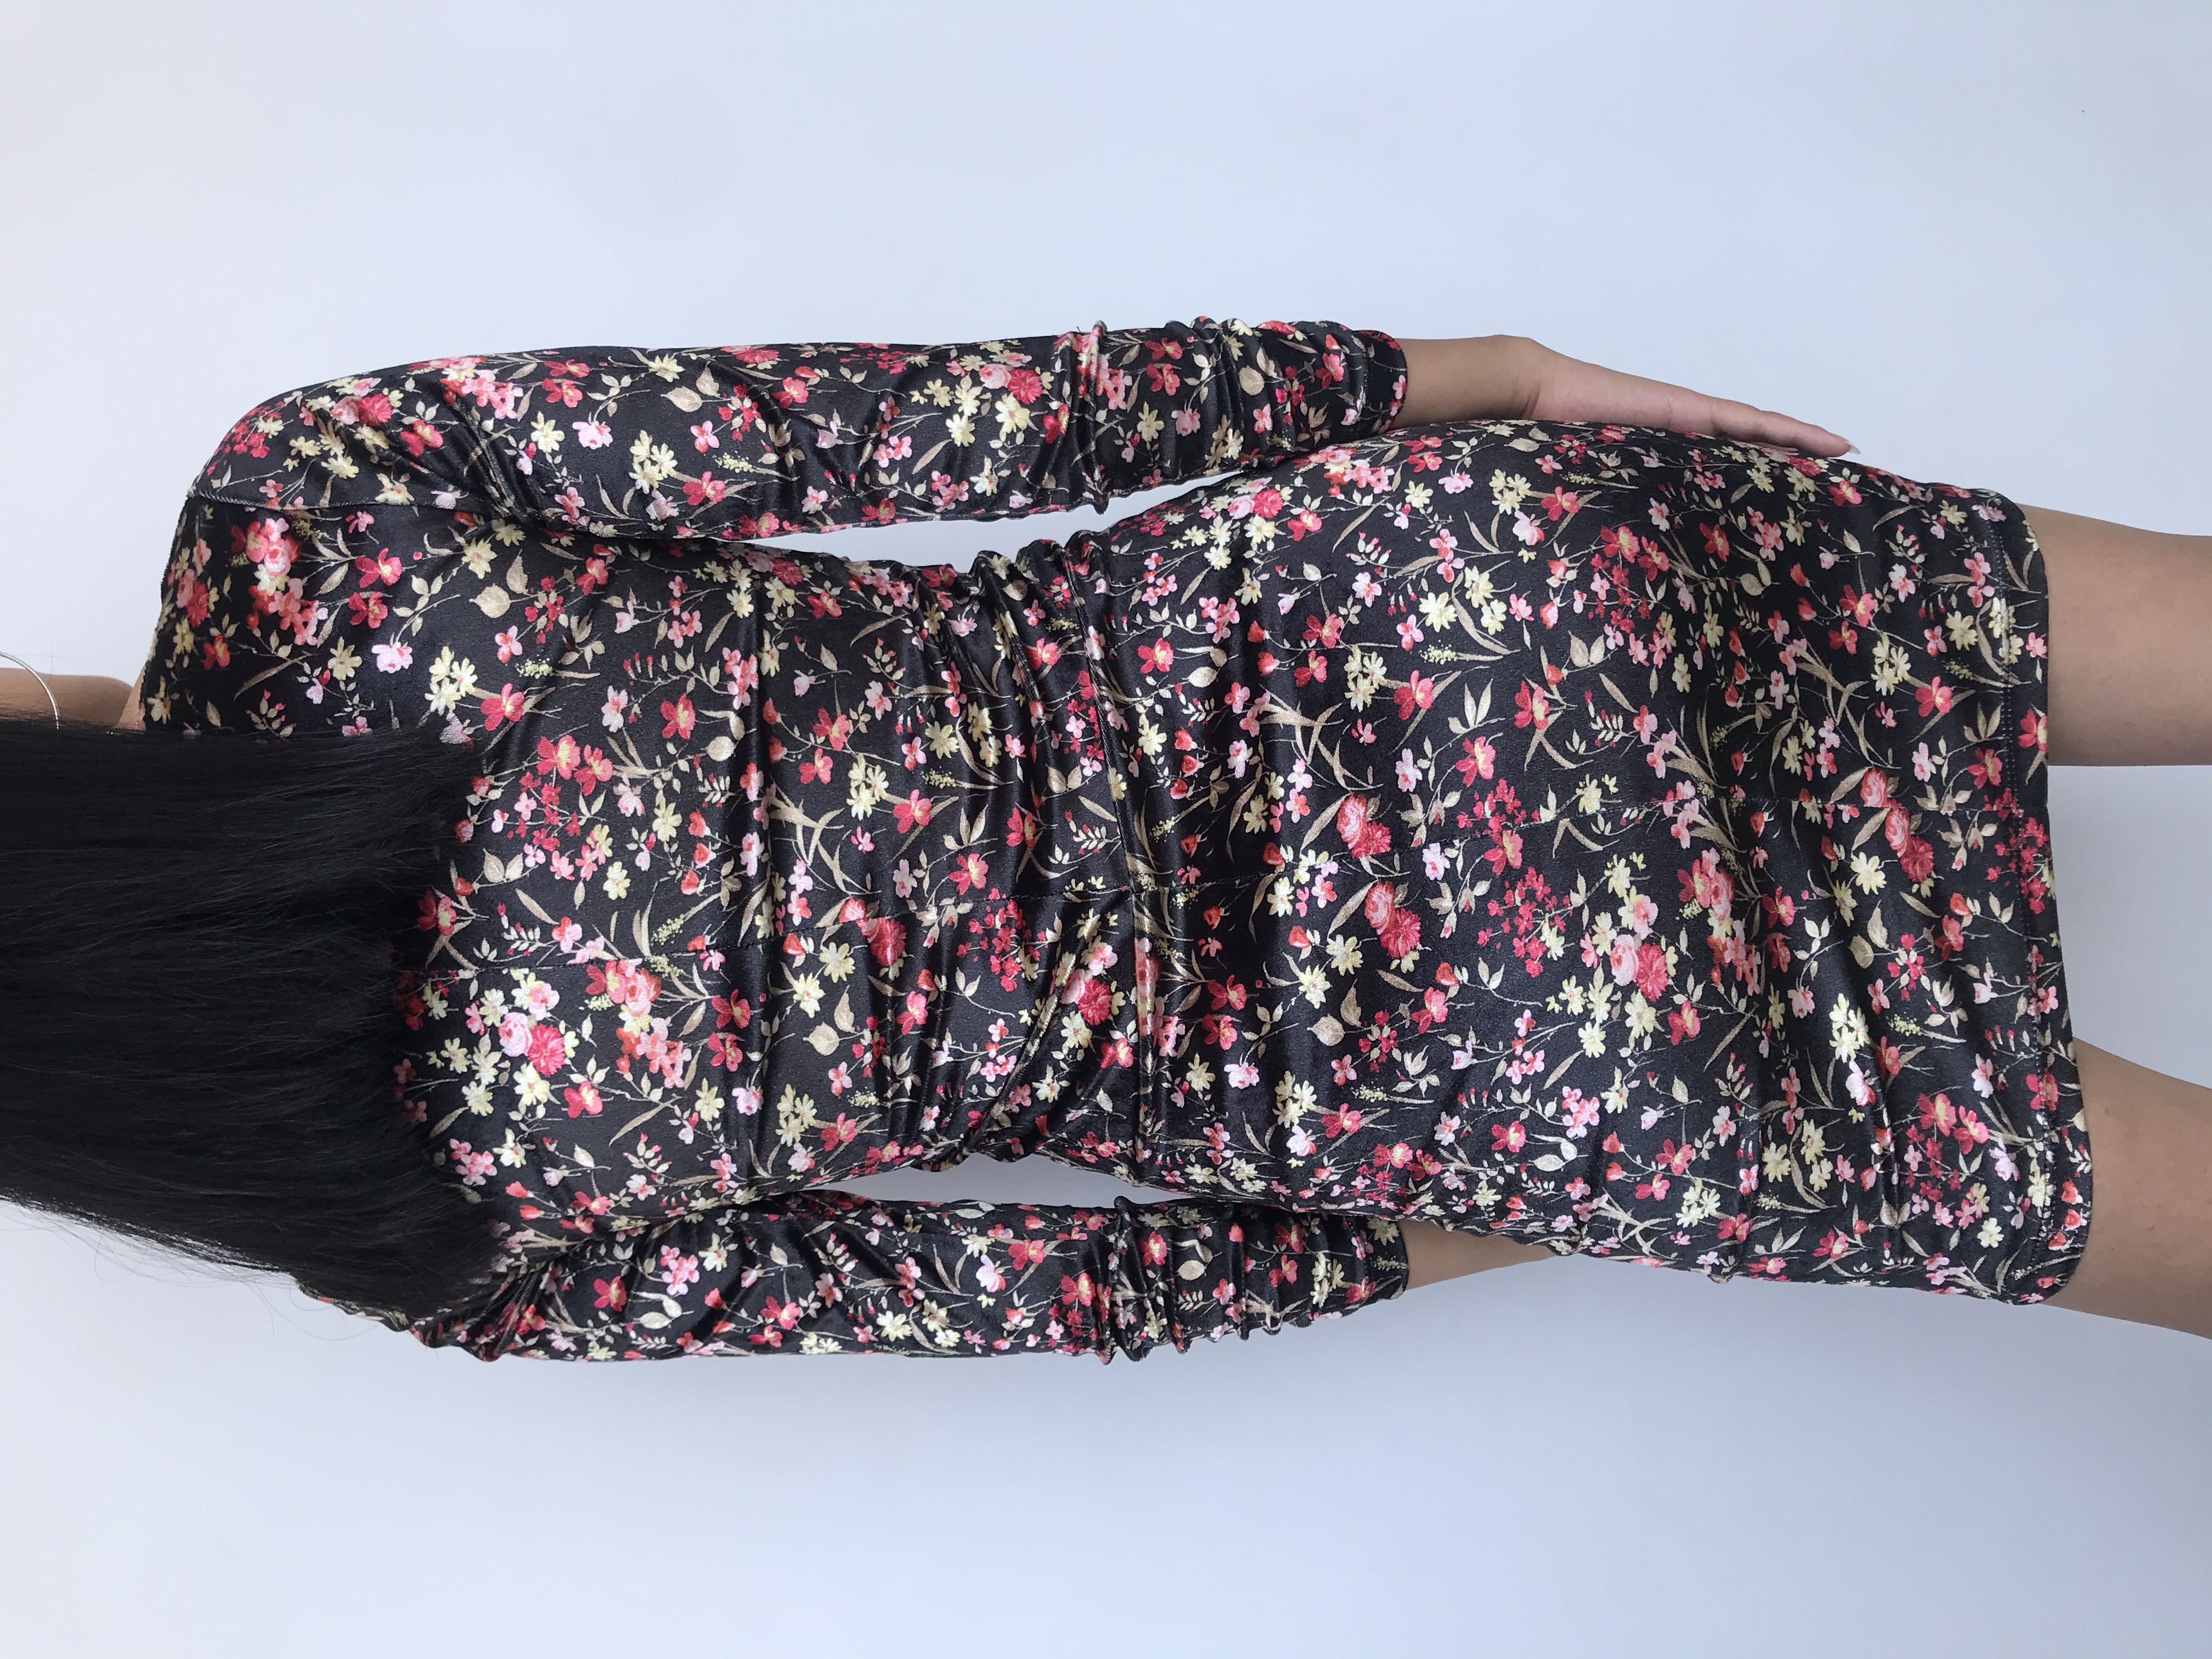 Vestido Joaquim Miro de terciopelo negro con estampado de flores, cuello ojal, manga larga con encarrujado, lleva forro. Precio Original S/ 280
Talla XS